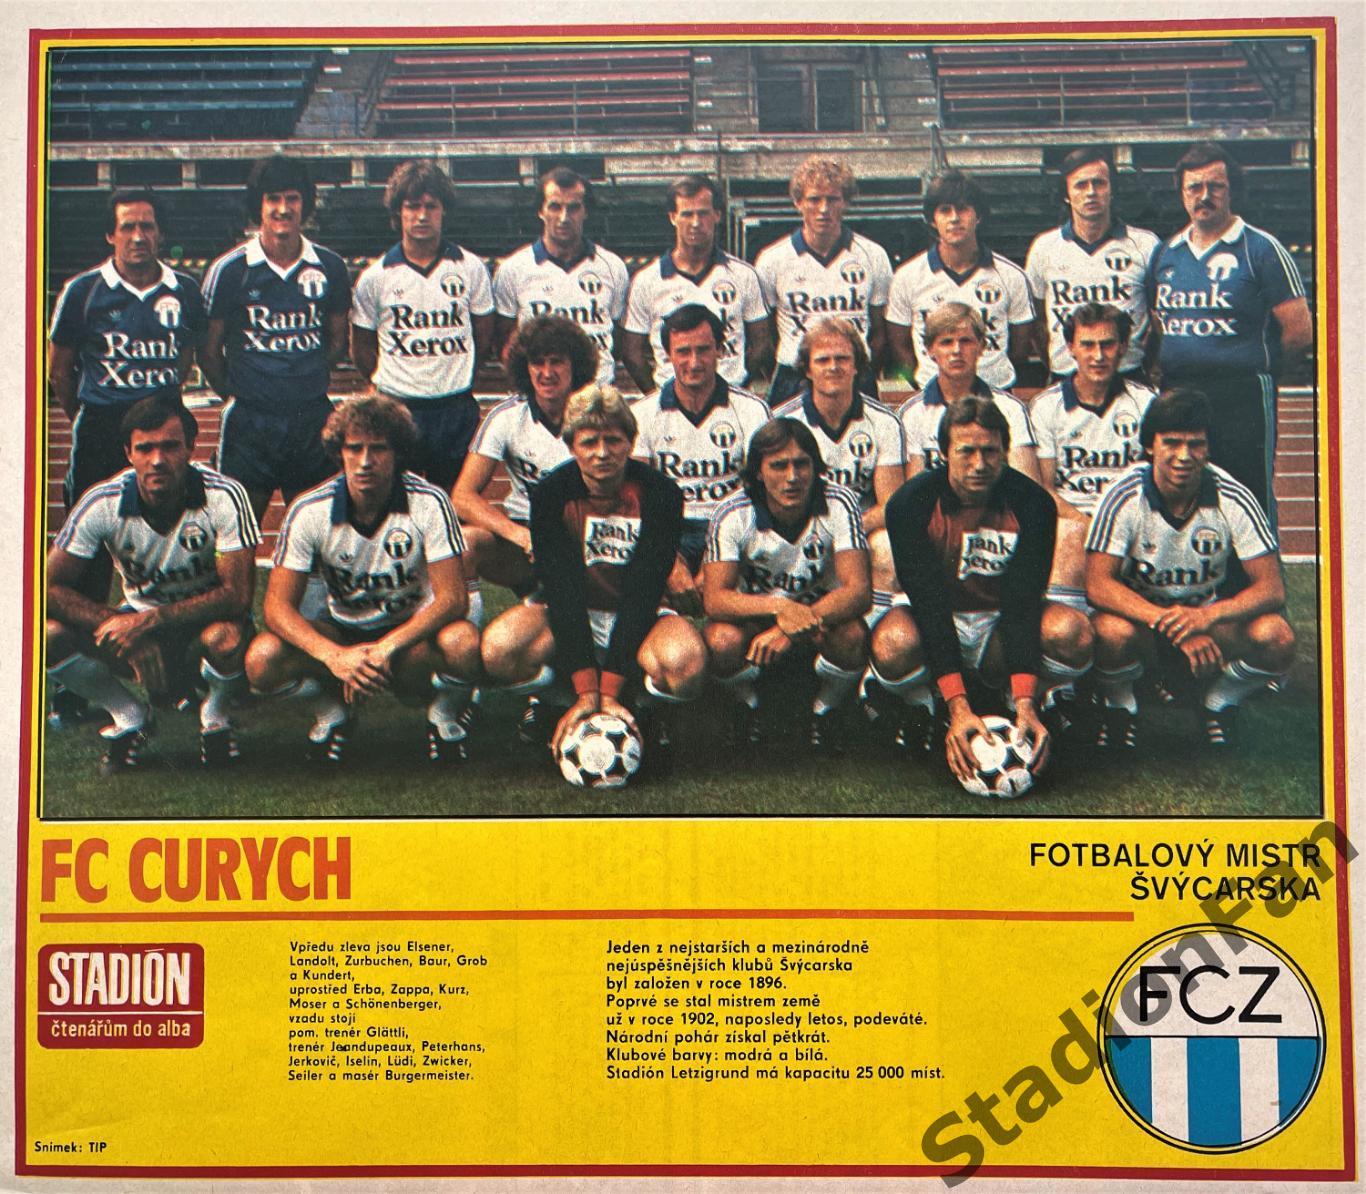 Постер из журнала Стадион (Stadion) - Zurich, 1981.